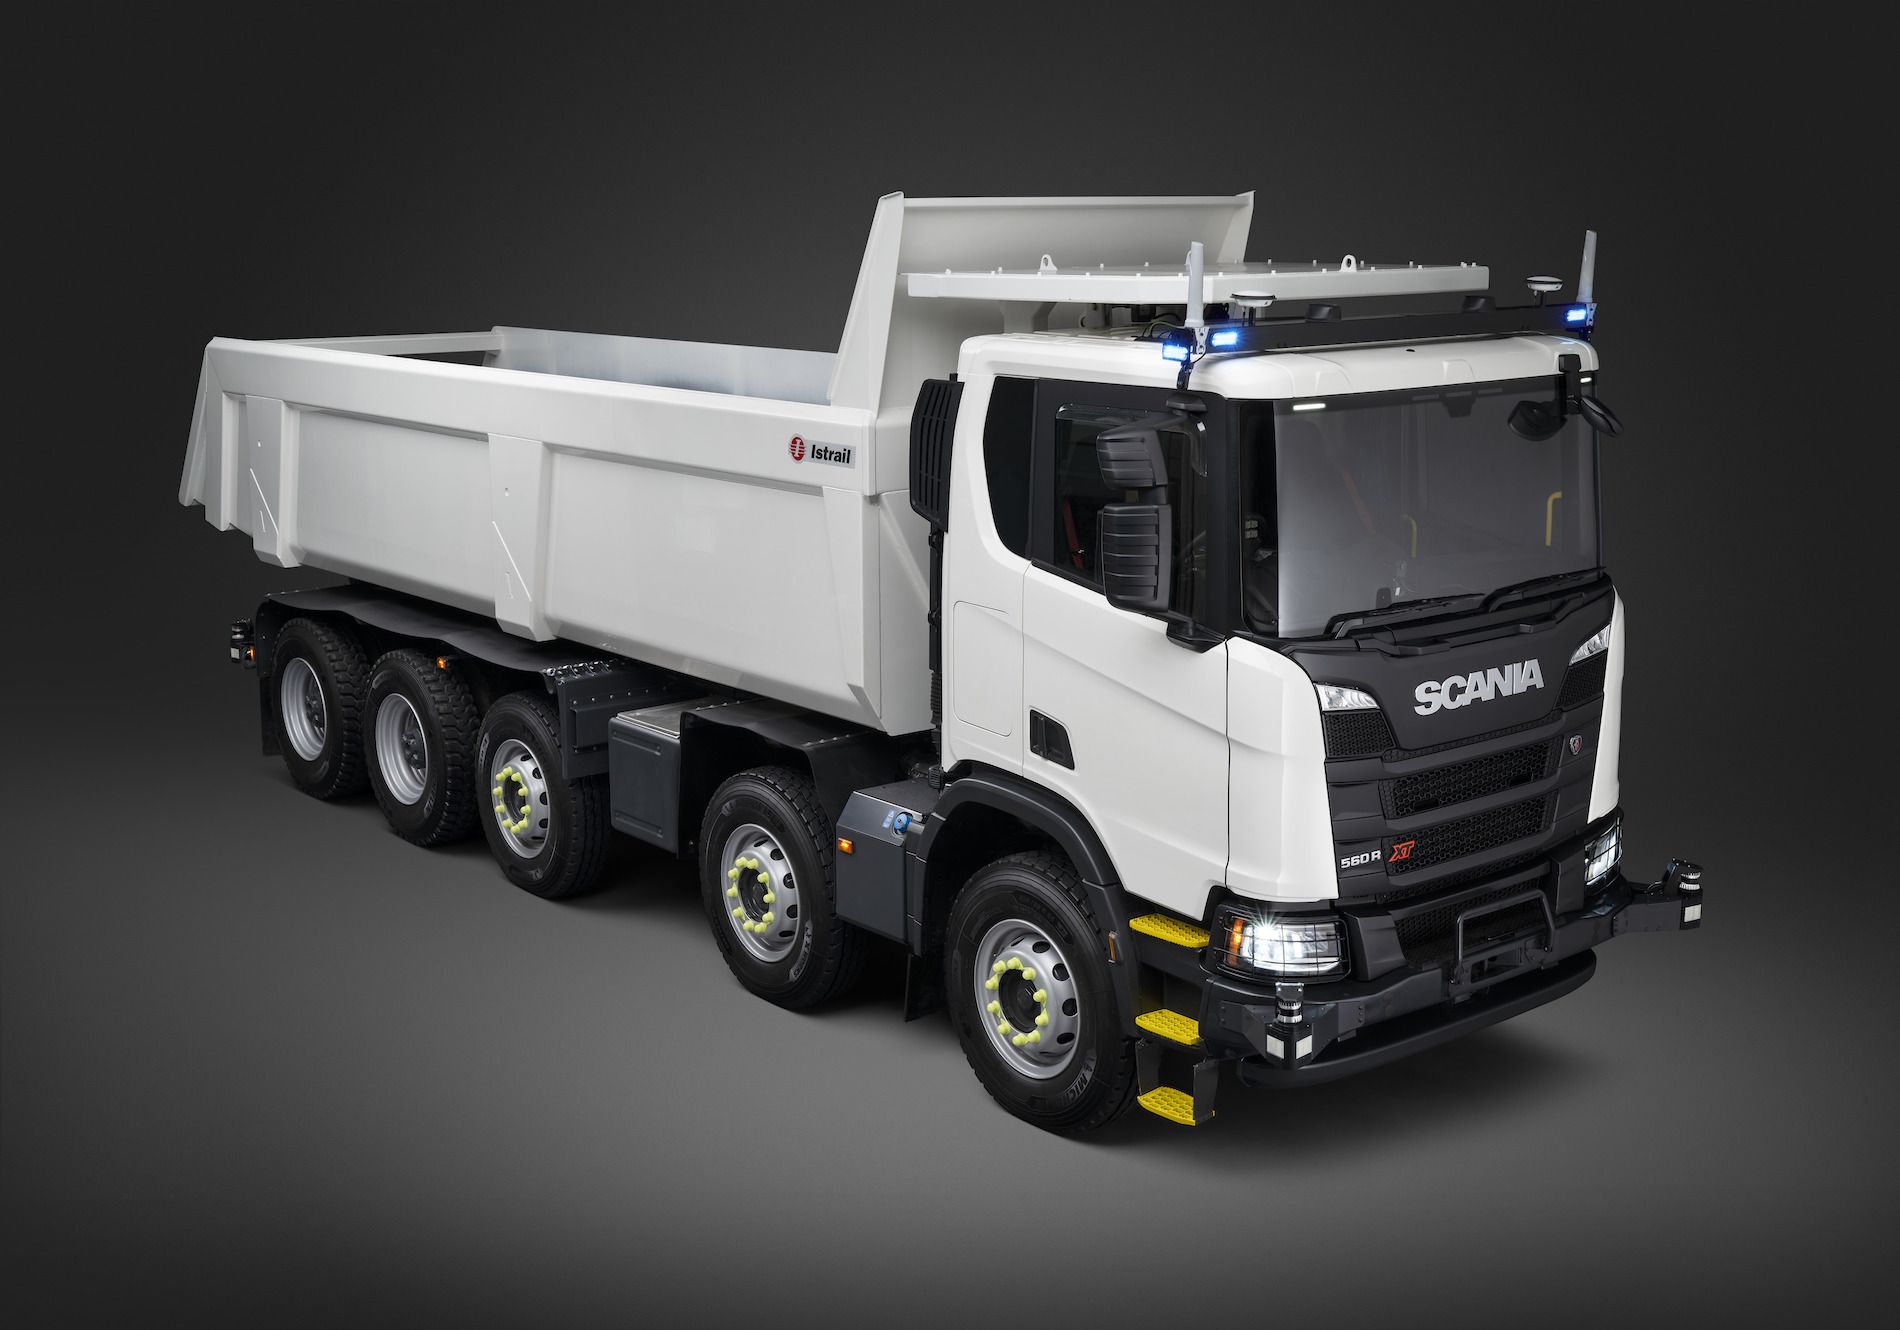 El vehículo ha sido desarrollado en estrecha colaboración entre el departamento de I+D de Scania y clientes del sector minero.